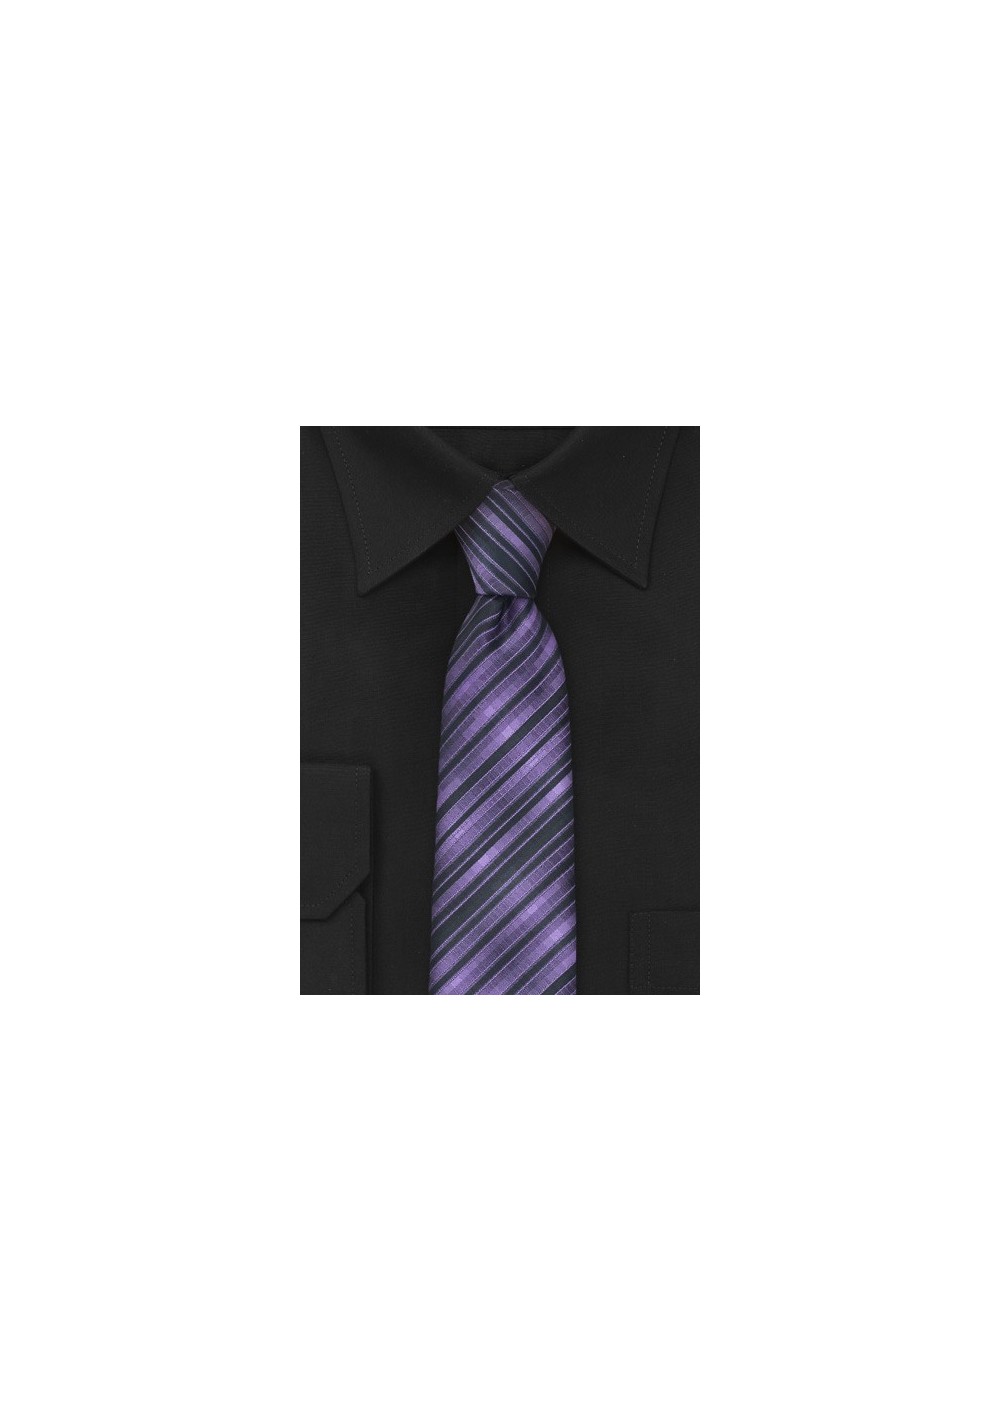 Skinny Necktie in Purple